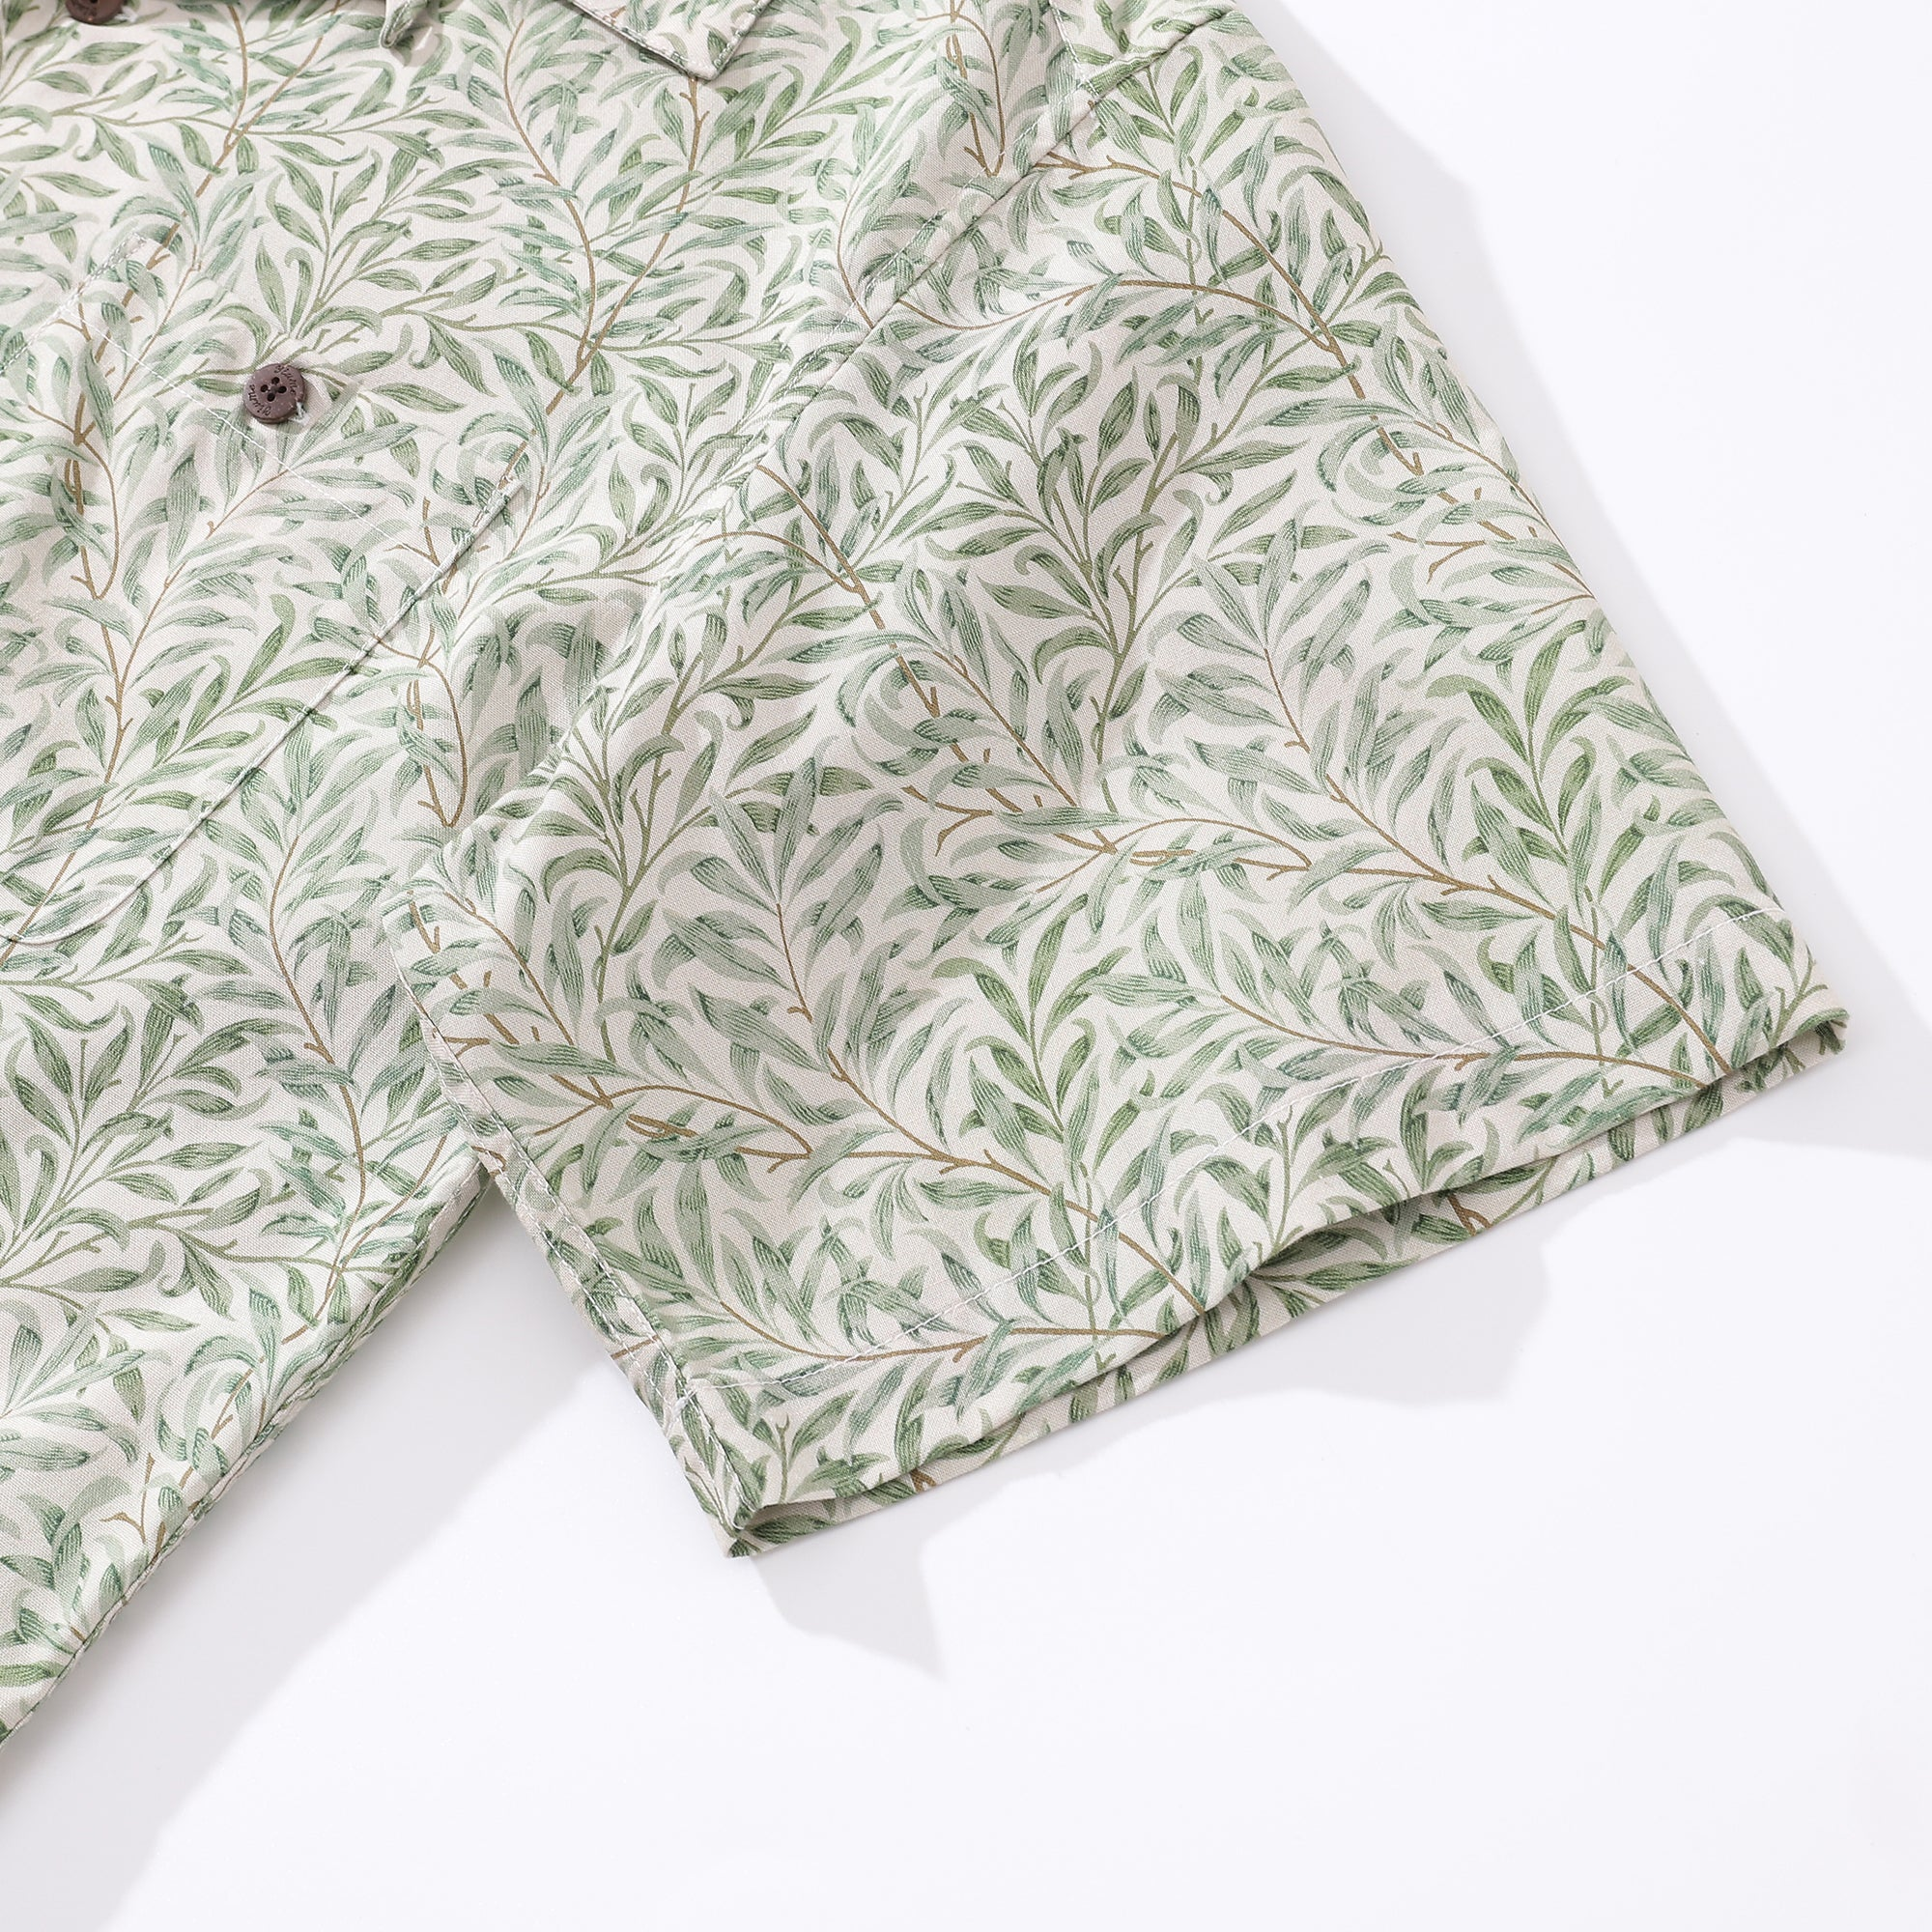 Chemise hawaïenne pour hommes Willow par William Morris chemise col de camp 100% coton